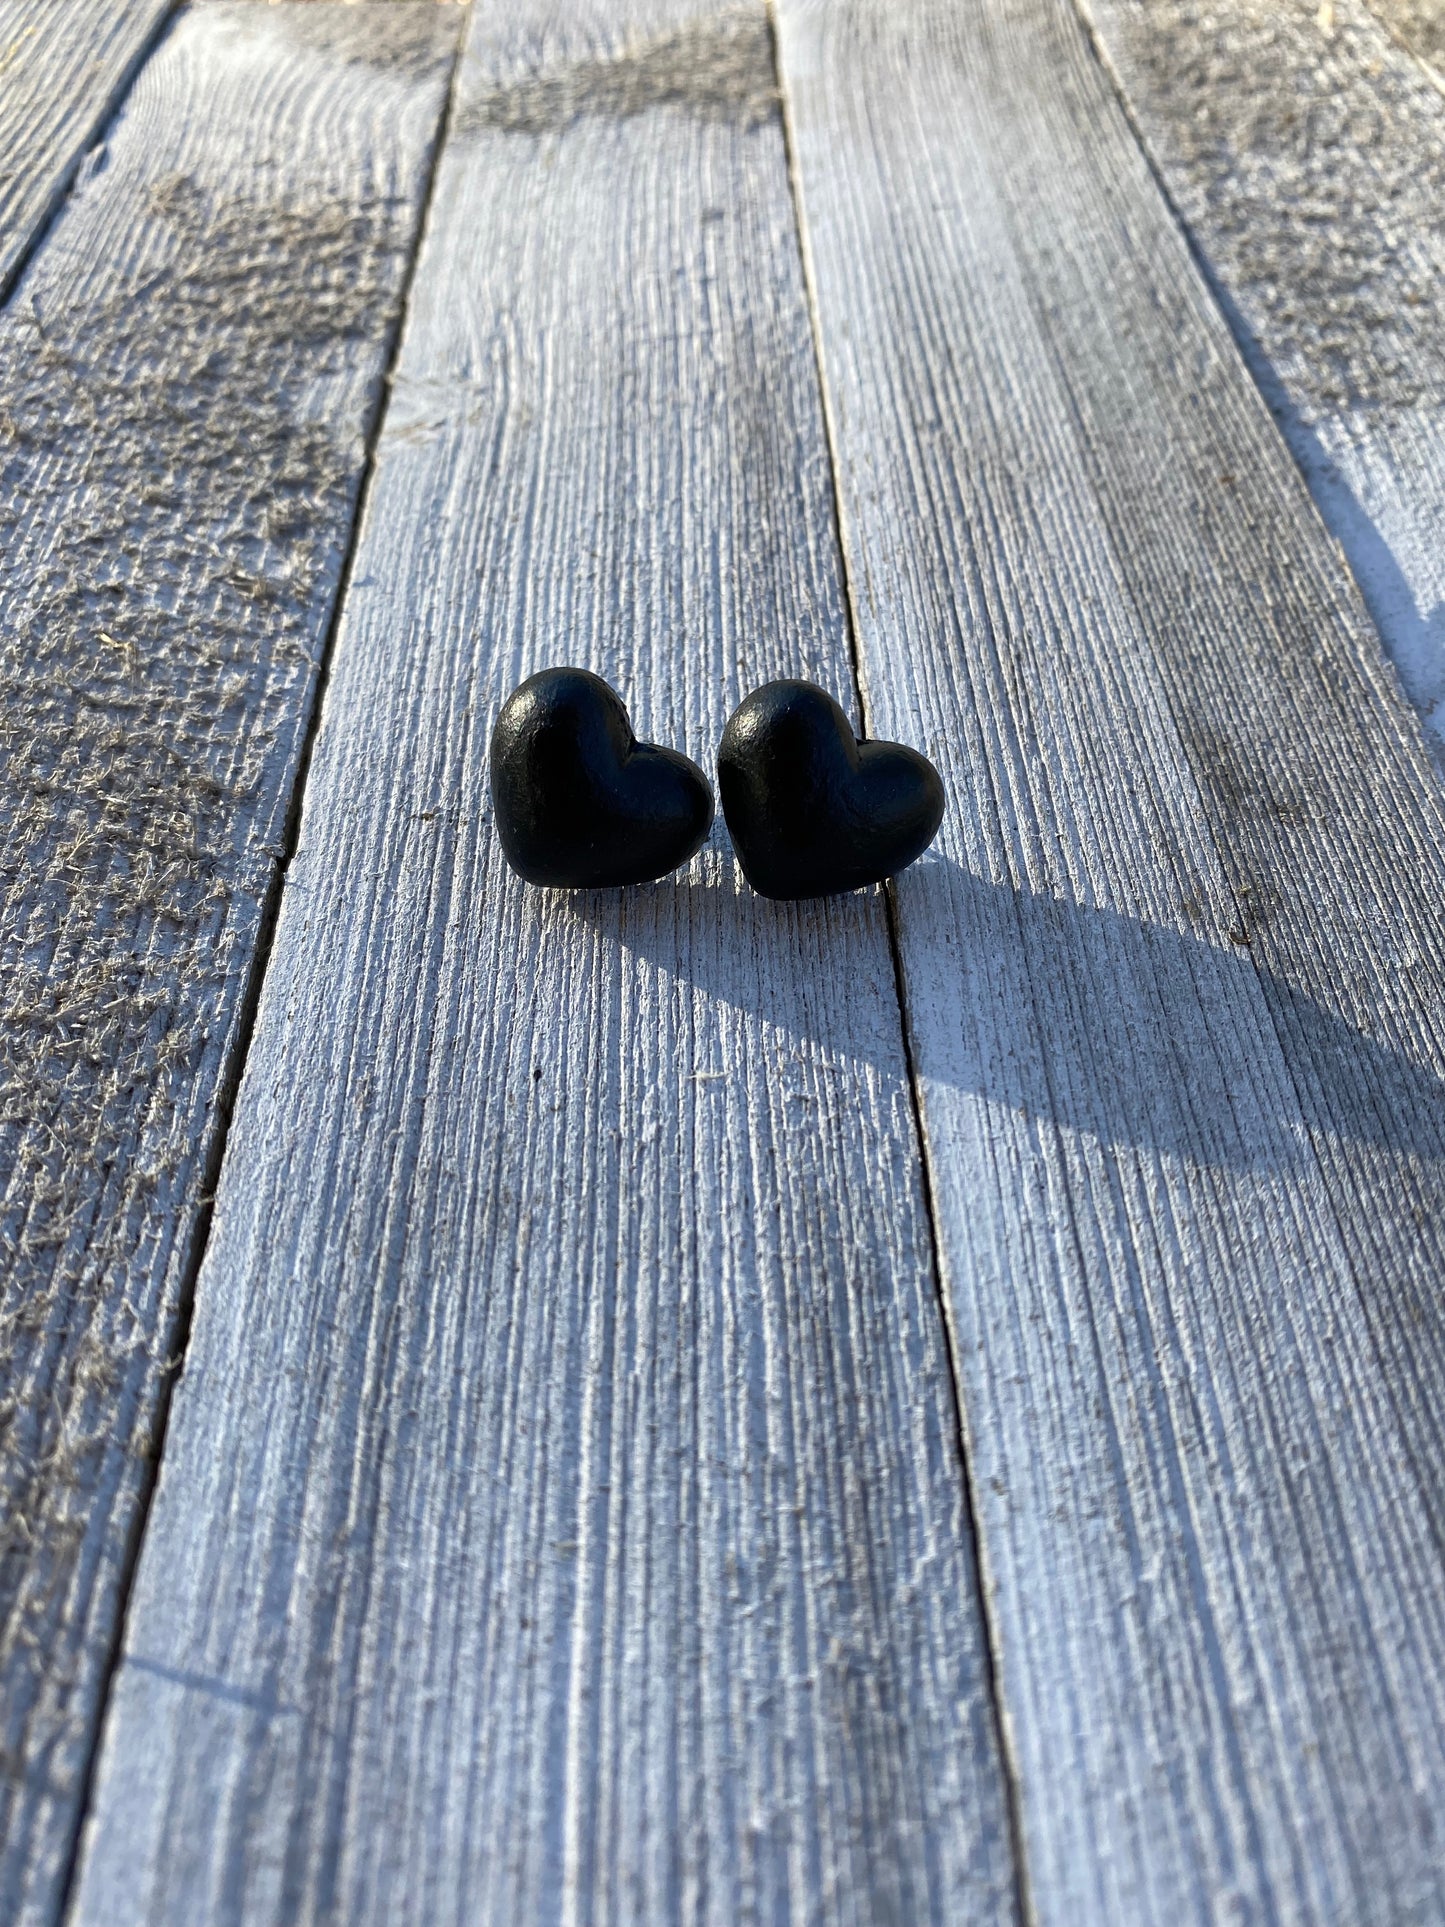 Black Heart Valentine Heart Stud Earrings